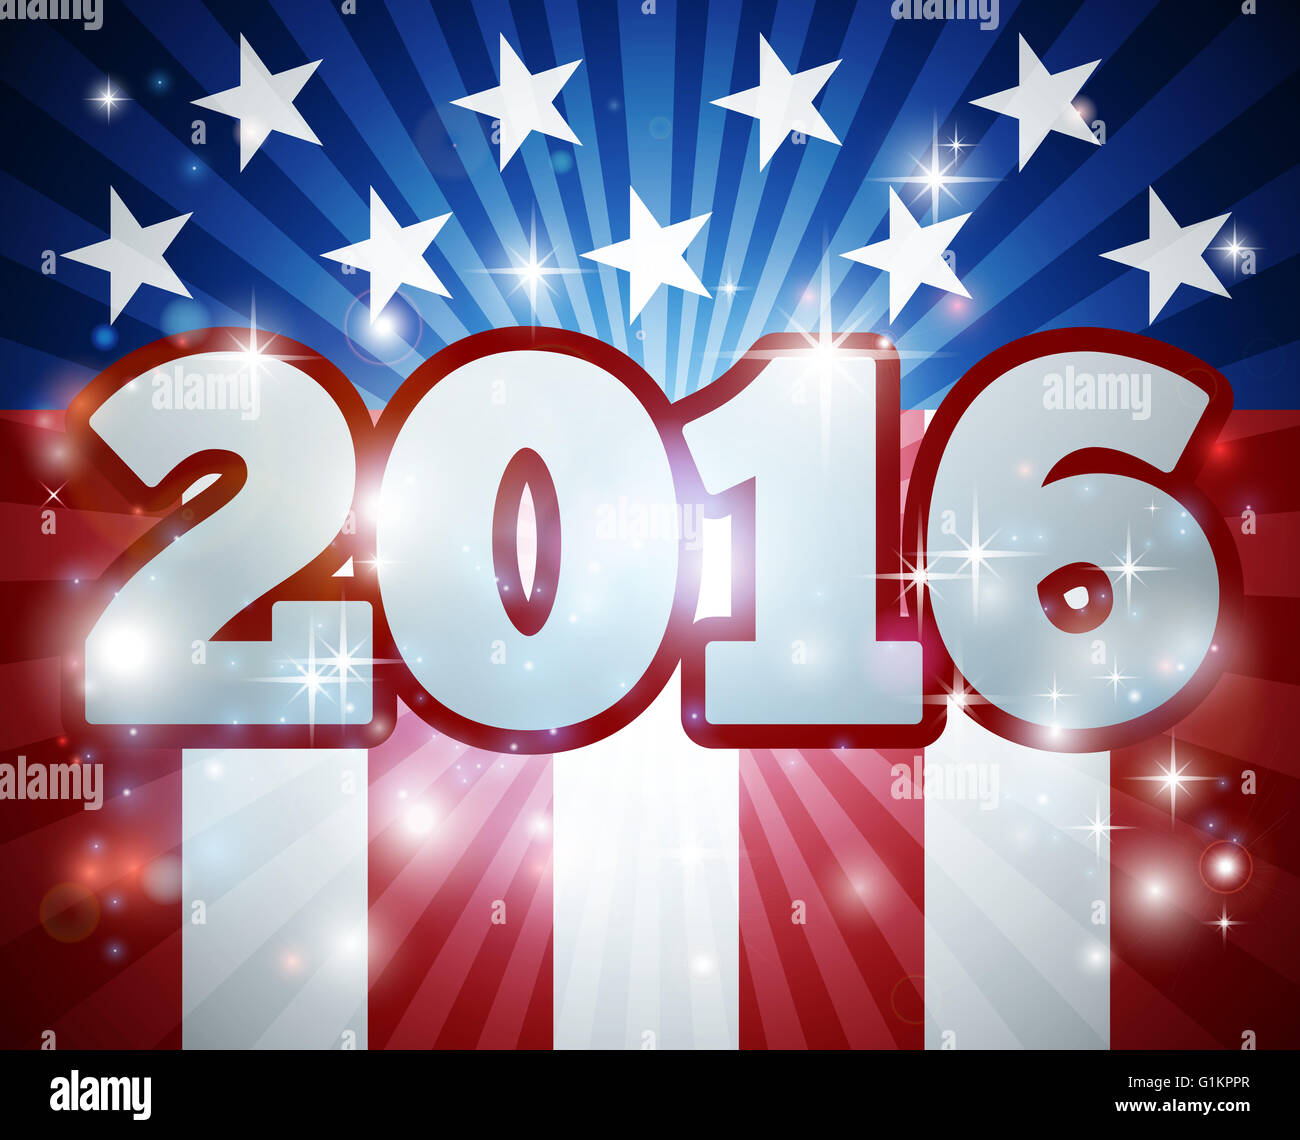 Élection 2016 drapeau américain Concept avec dessin du drapeau à l'arrière-plan et 2016 année nombre Banque D'Images